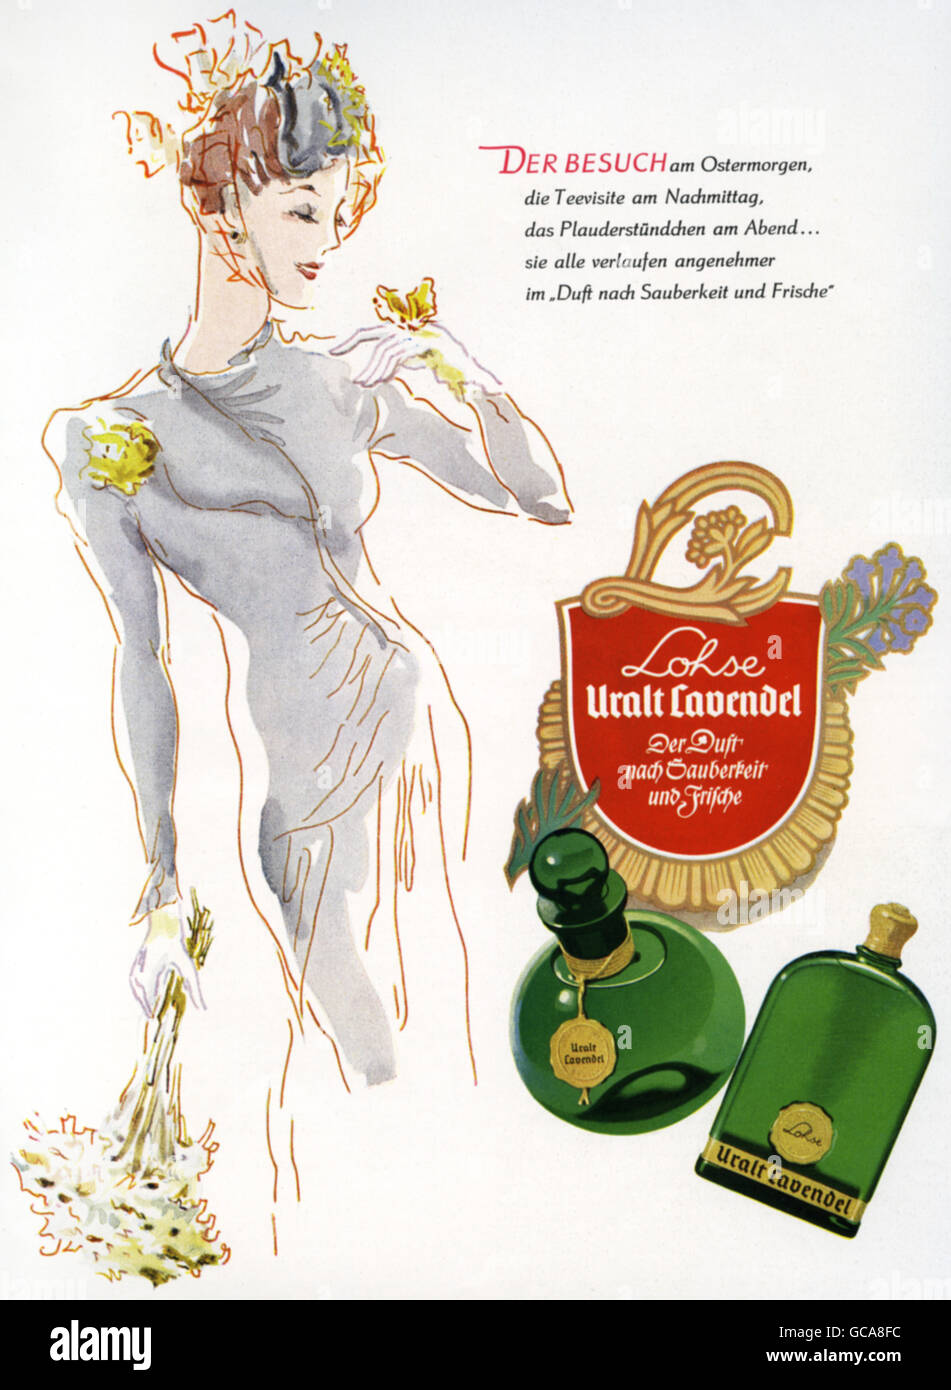 publicidad, cosméticos, perfume, Lohse Uralt Lavendel, anuncio, Alemania, 1941, Derechos adicionales-Clearences-no disponible Foto de stock